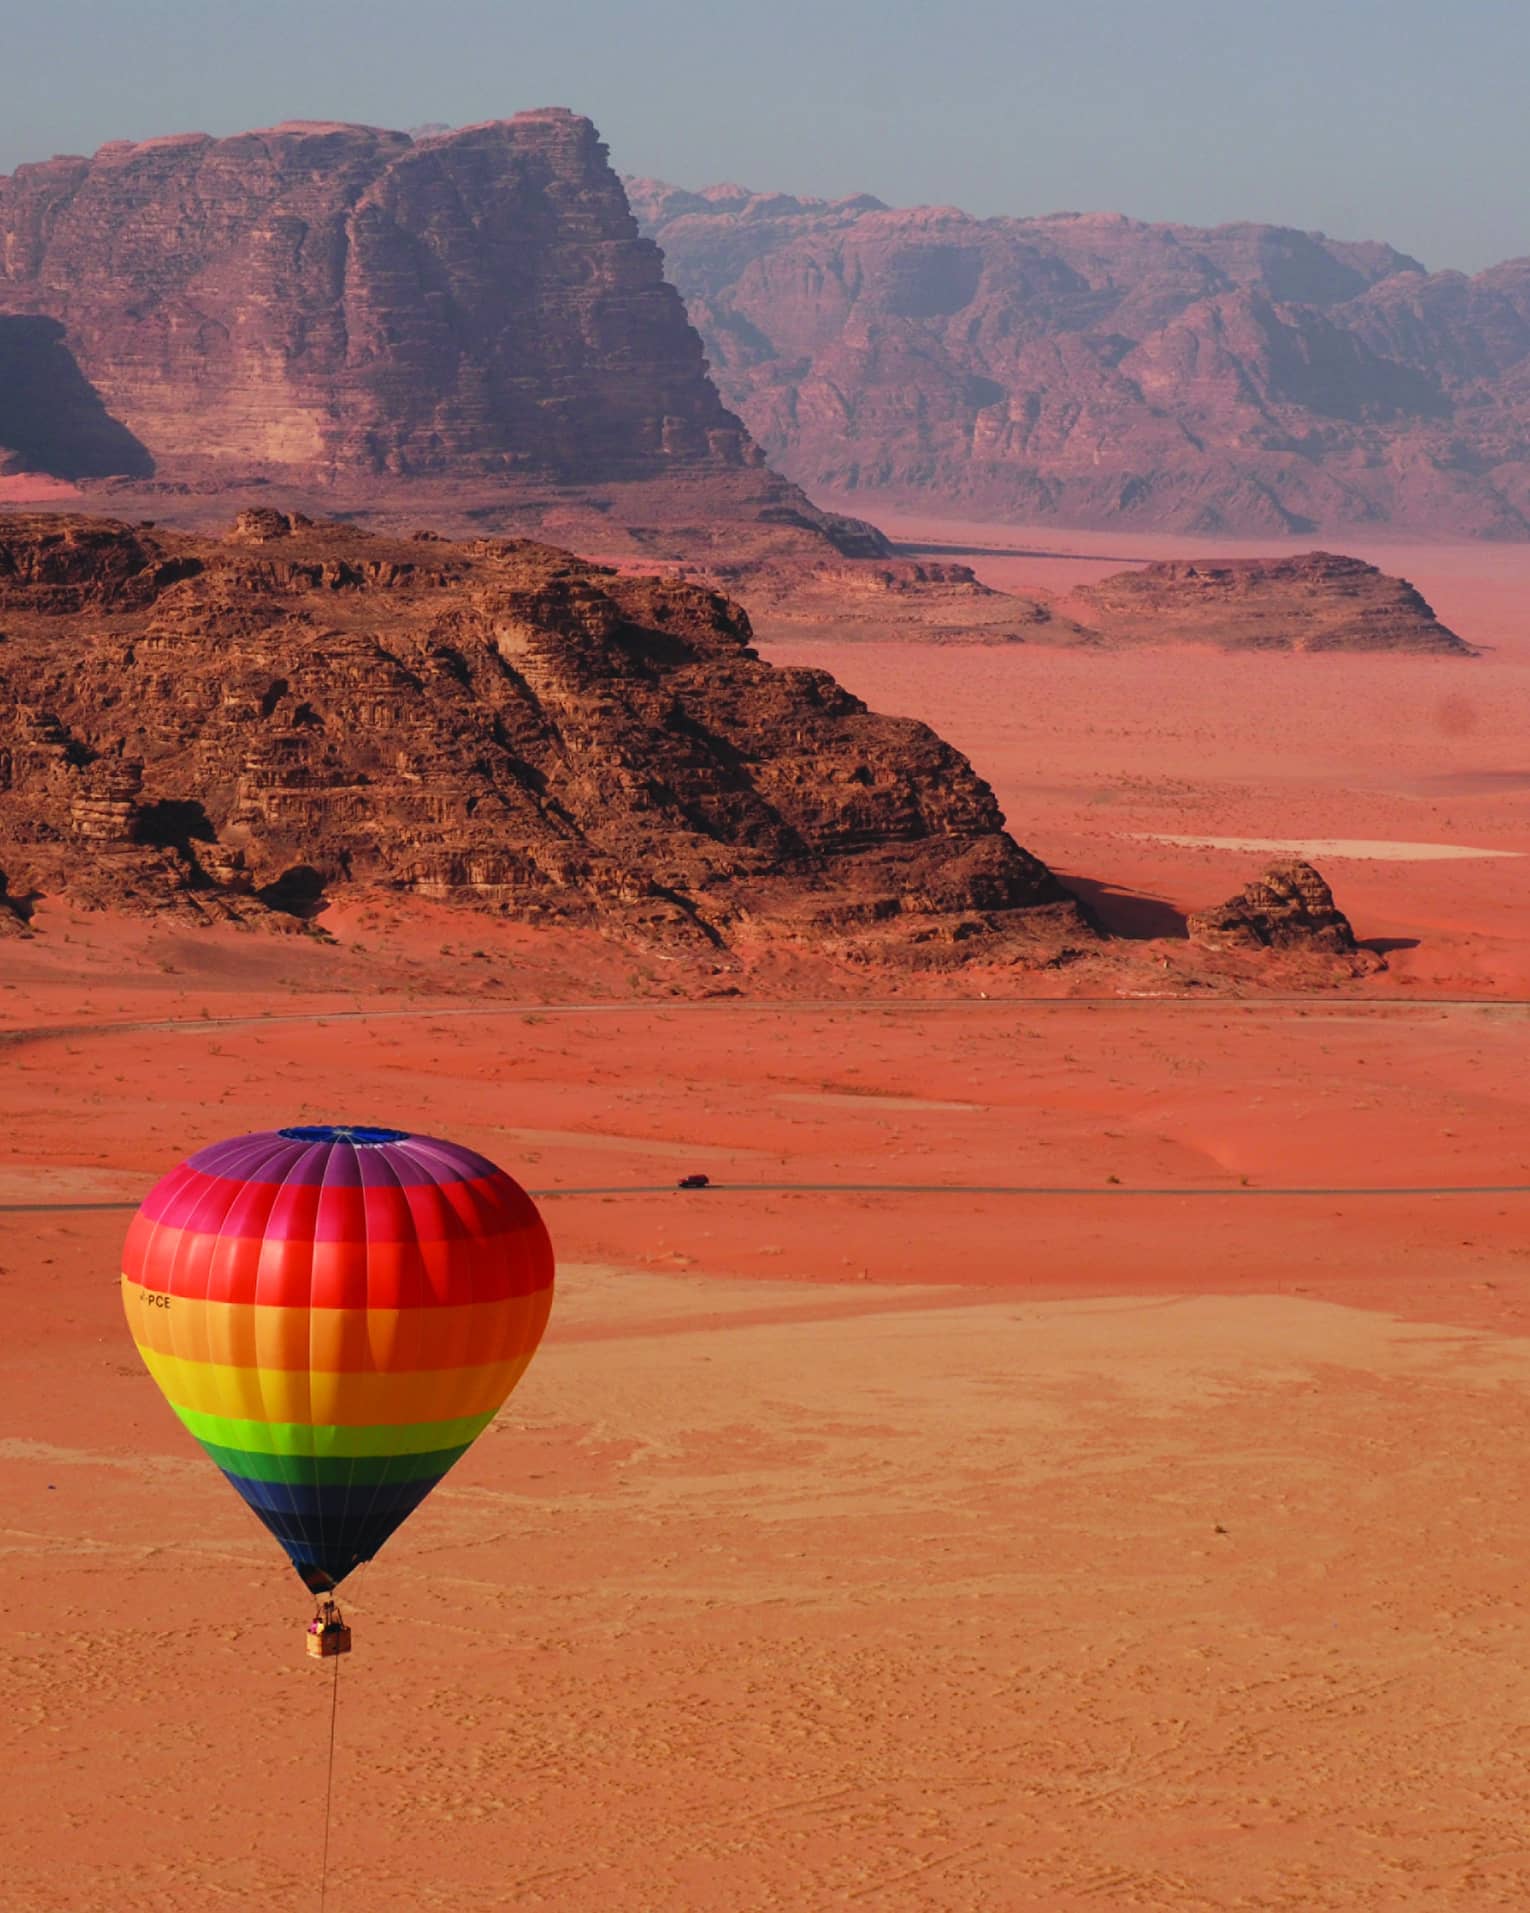 Rainbow hot air balloon flying over red sand in Jordan desert